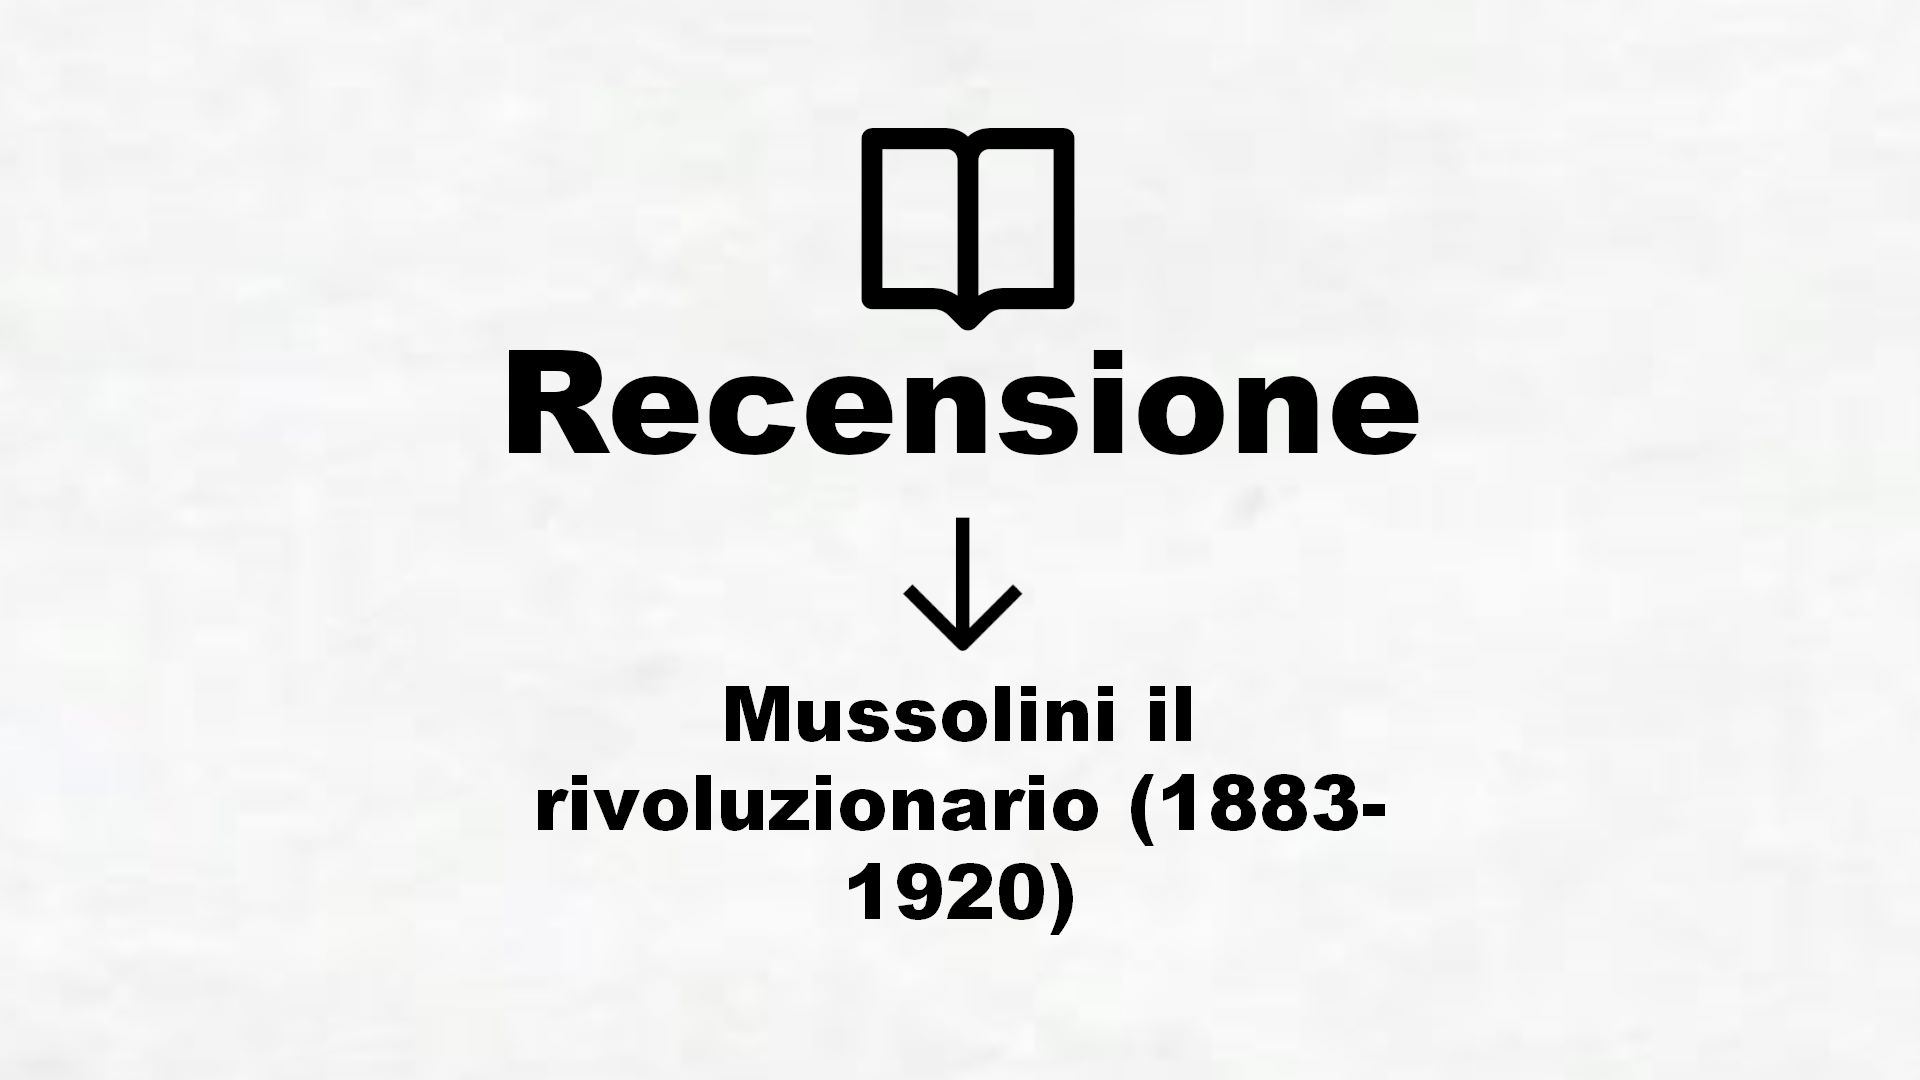 Mussolini il rivoluzionario (1883-1920) – Recensione Libro